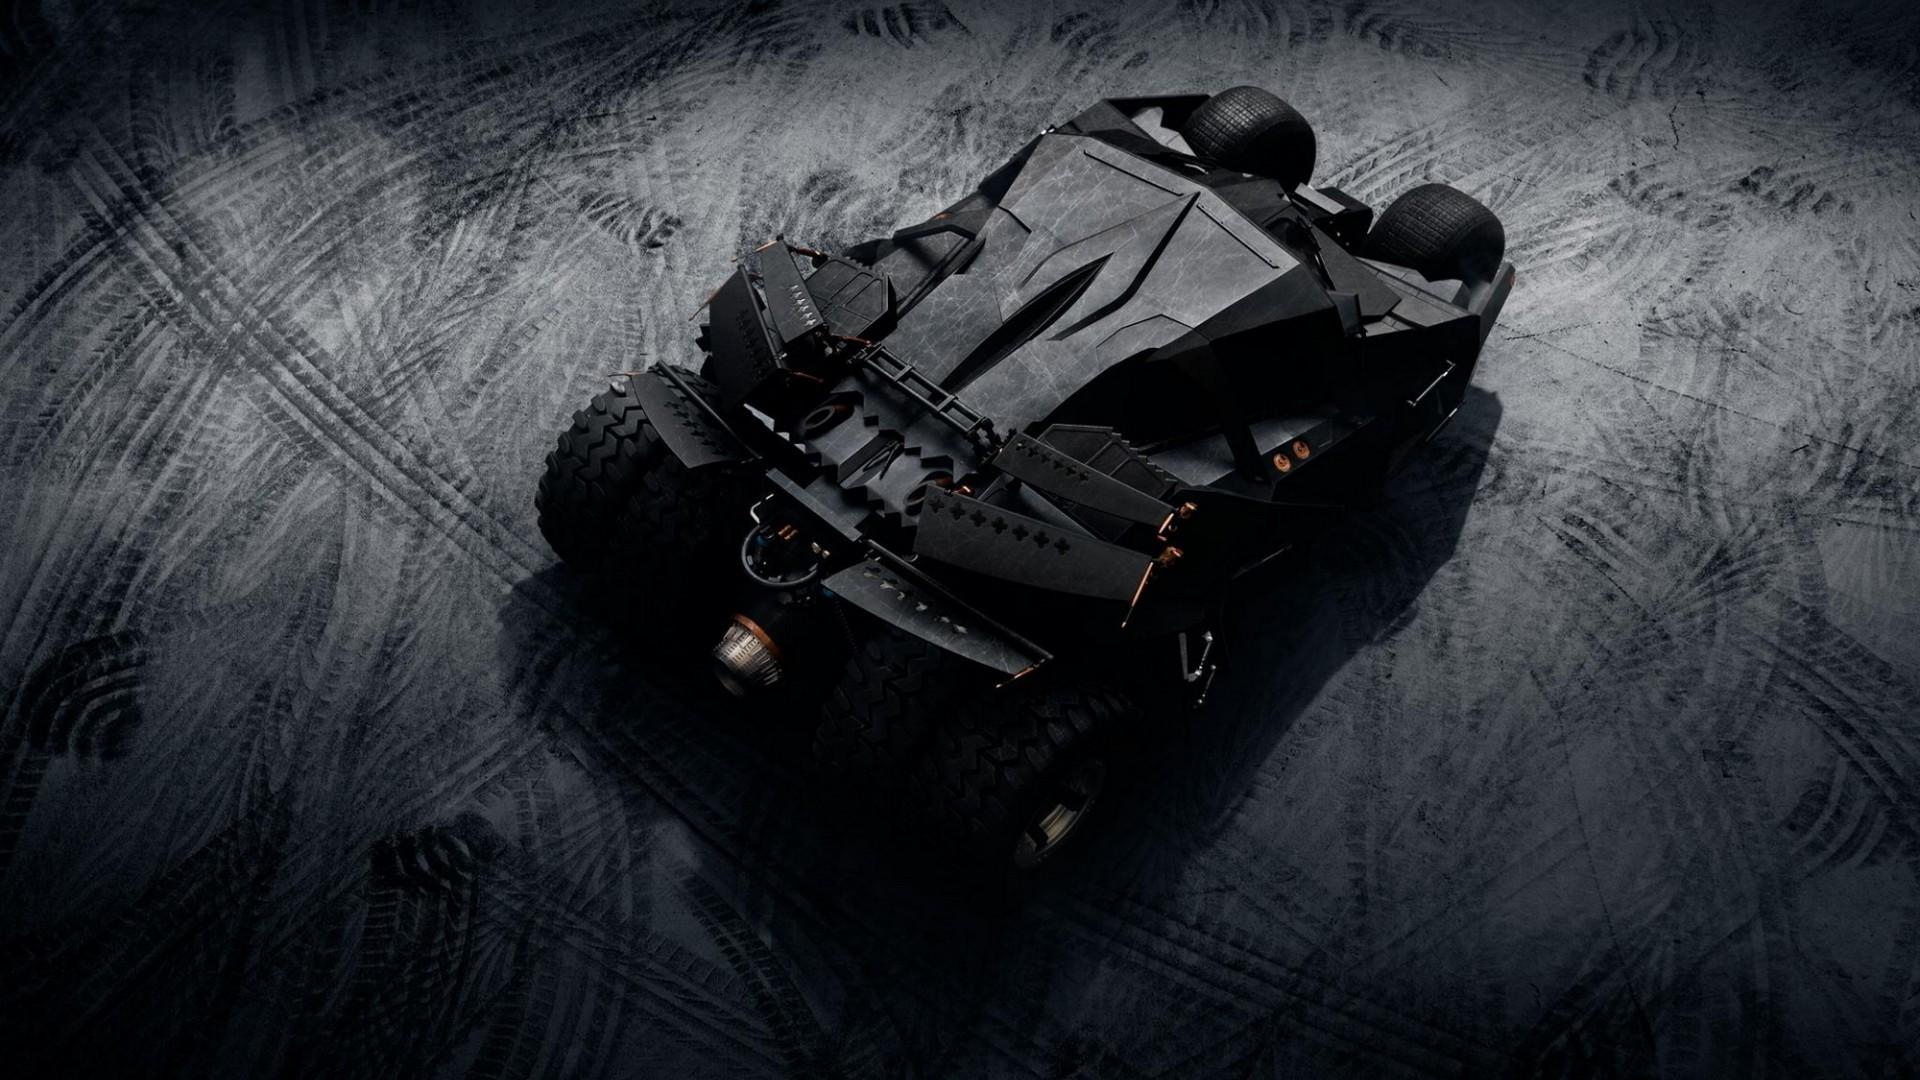 Batman Batmobile, HD Cars, 4k Wallpaper, Image